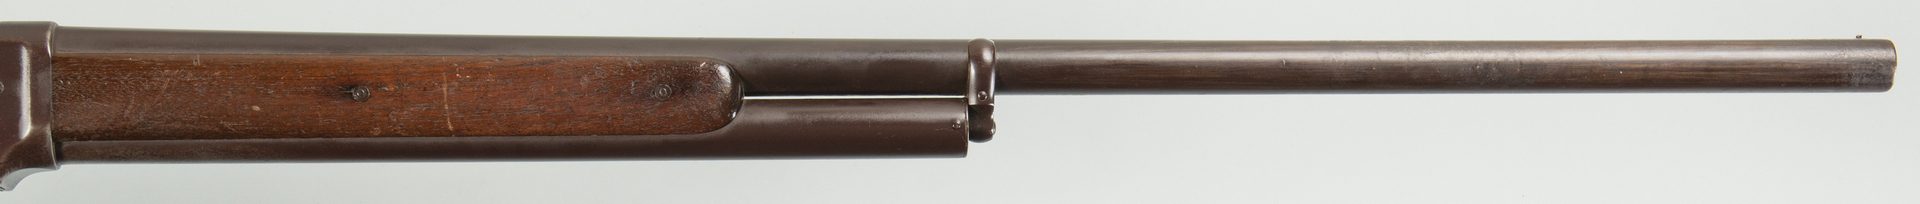 Lot 796: Winchester Model 1889, 10 Gauge Lever Action Shotgun